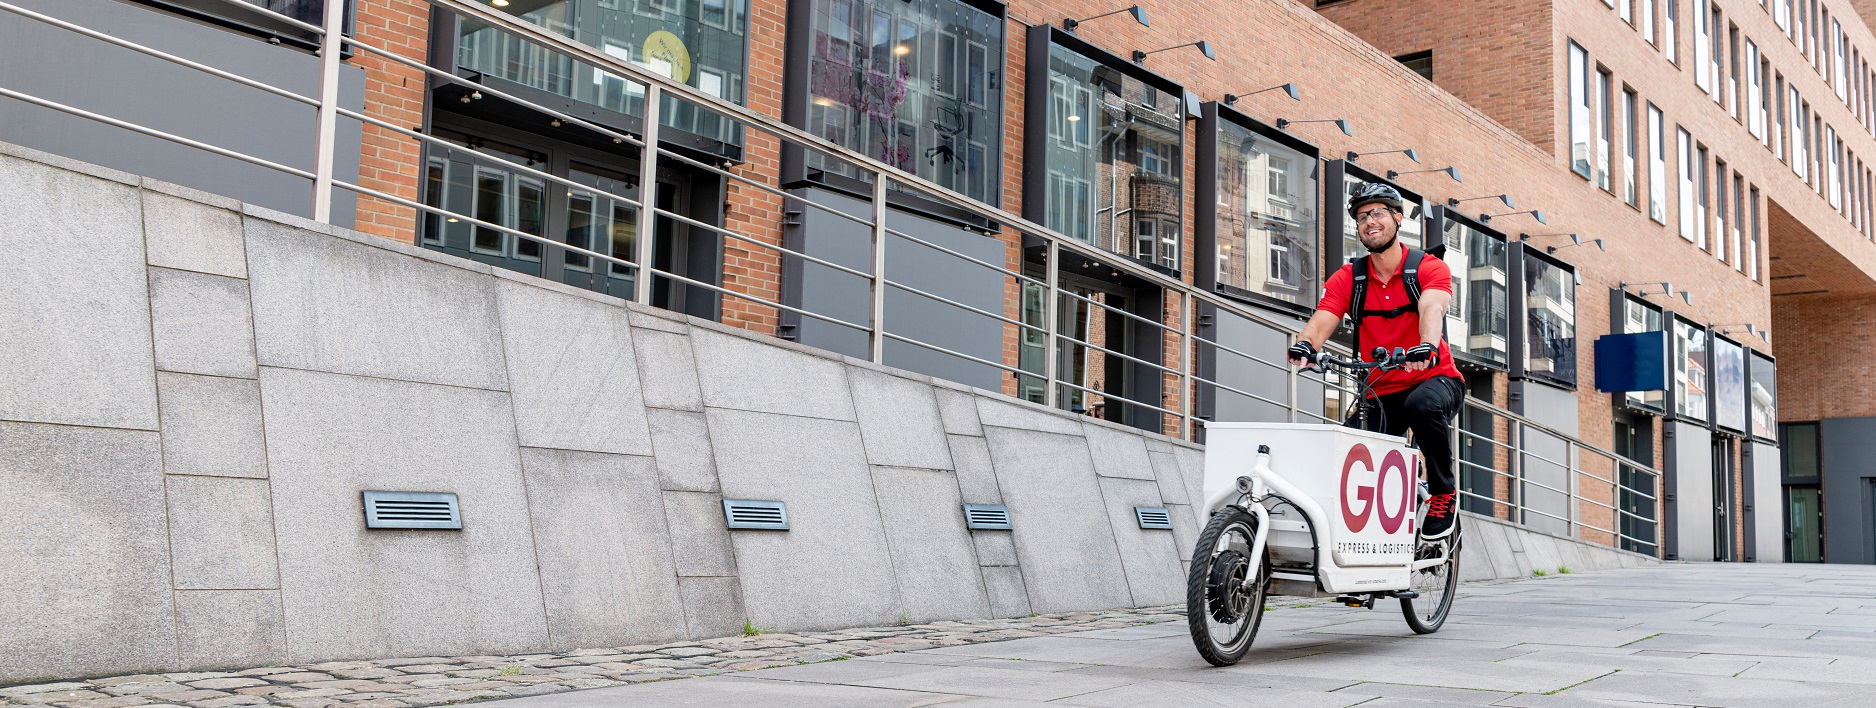 GO! Fahrradkurier fährt auf Lastenrad einen breiten Weg vor einem modernen Backsteingebäude runter